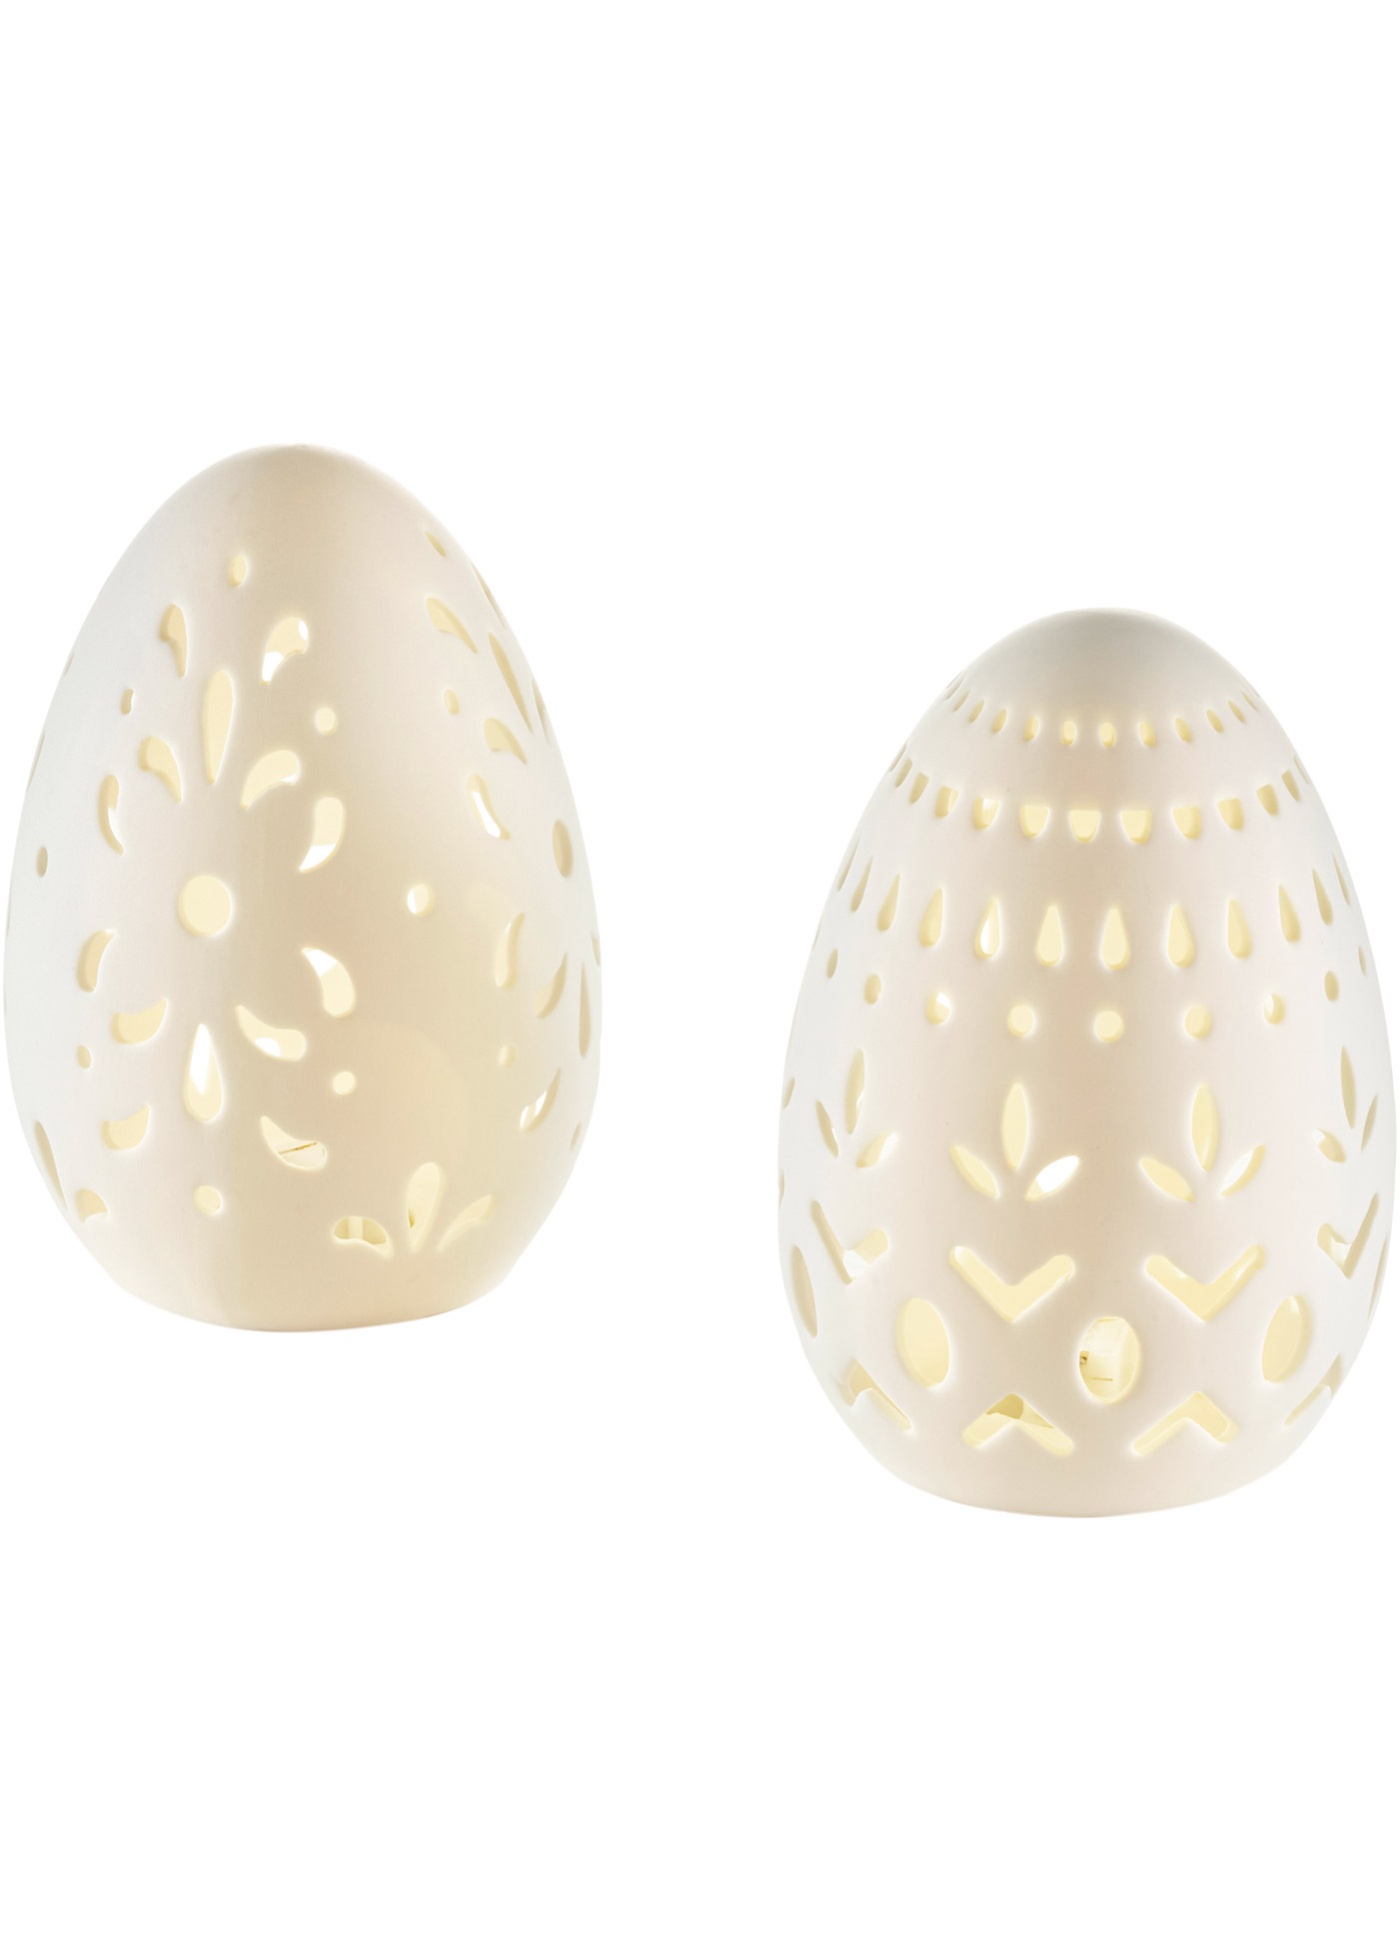 Objet déco LED œuf de Pâques avec perforations (Ens. 2 pces.)